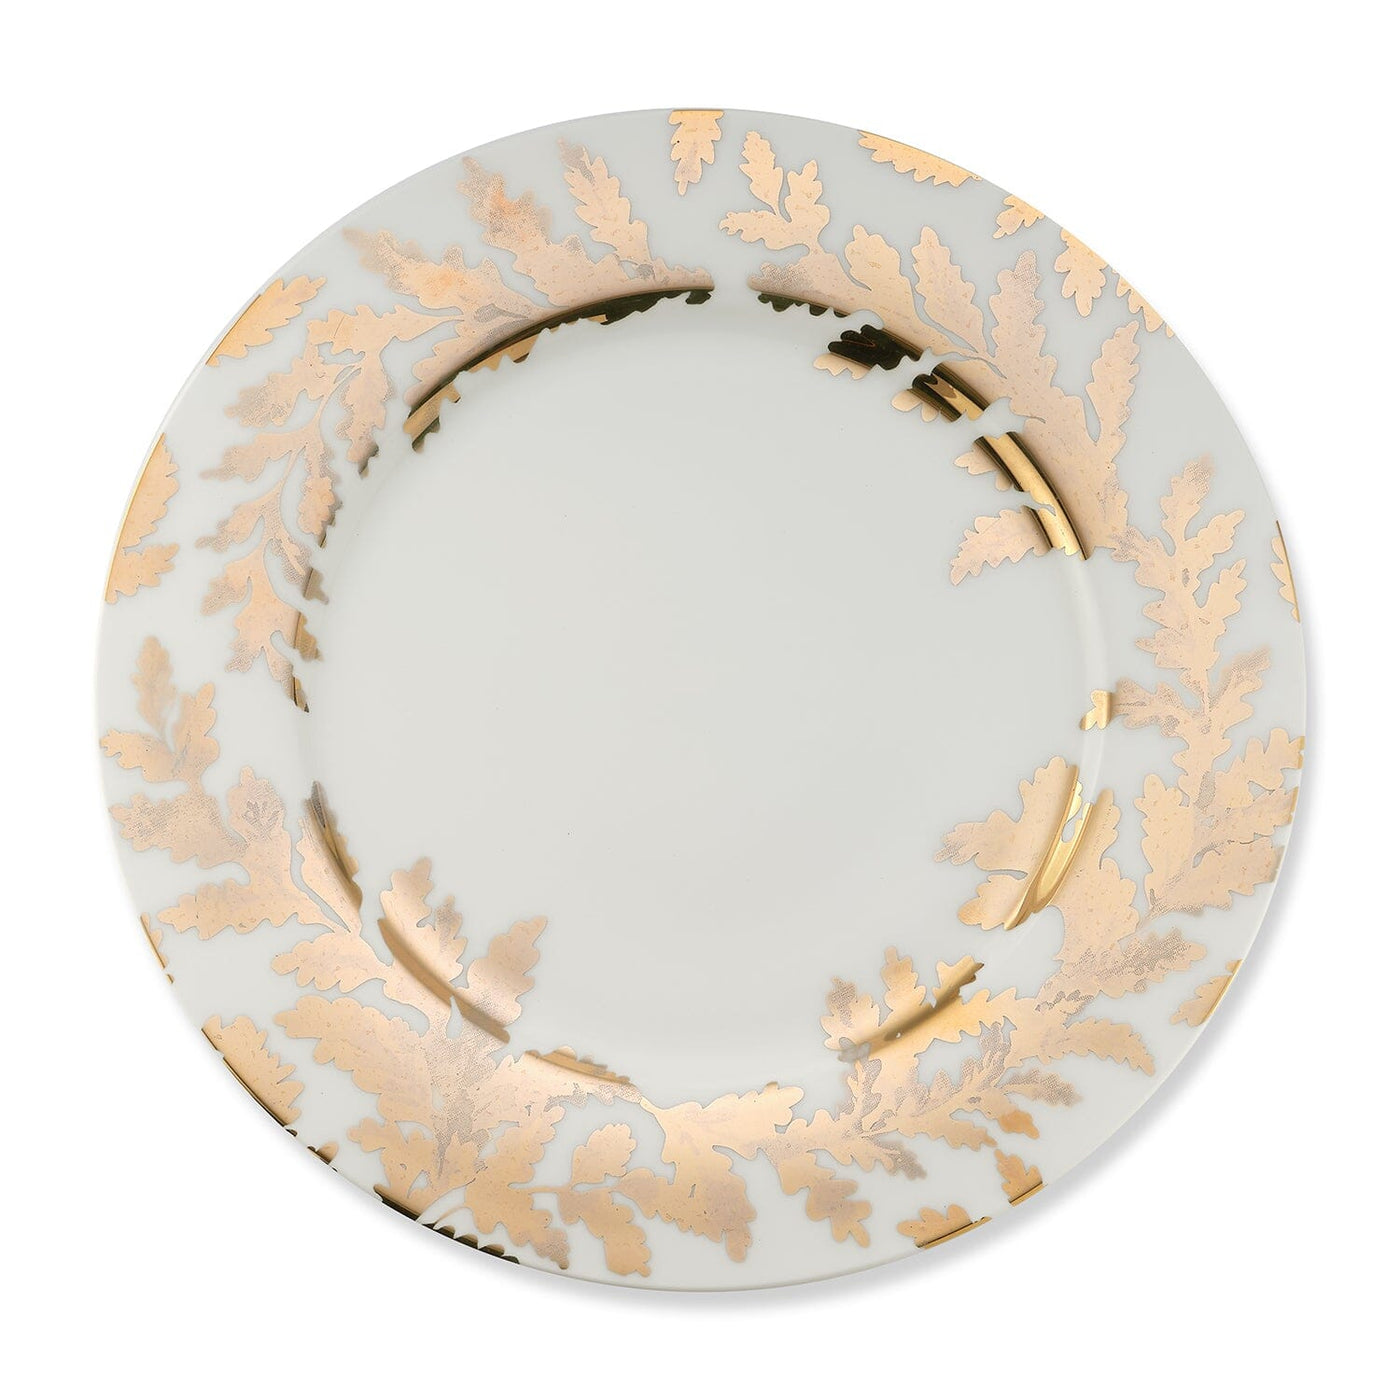 Gold Leaves Dinner Plate Gold Sunburst Mirror Table Items Chefanie 